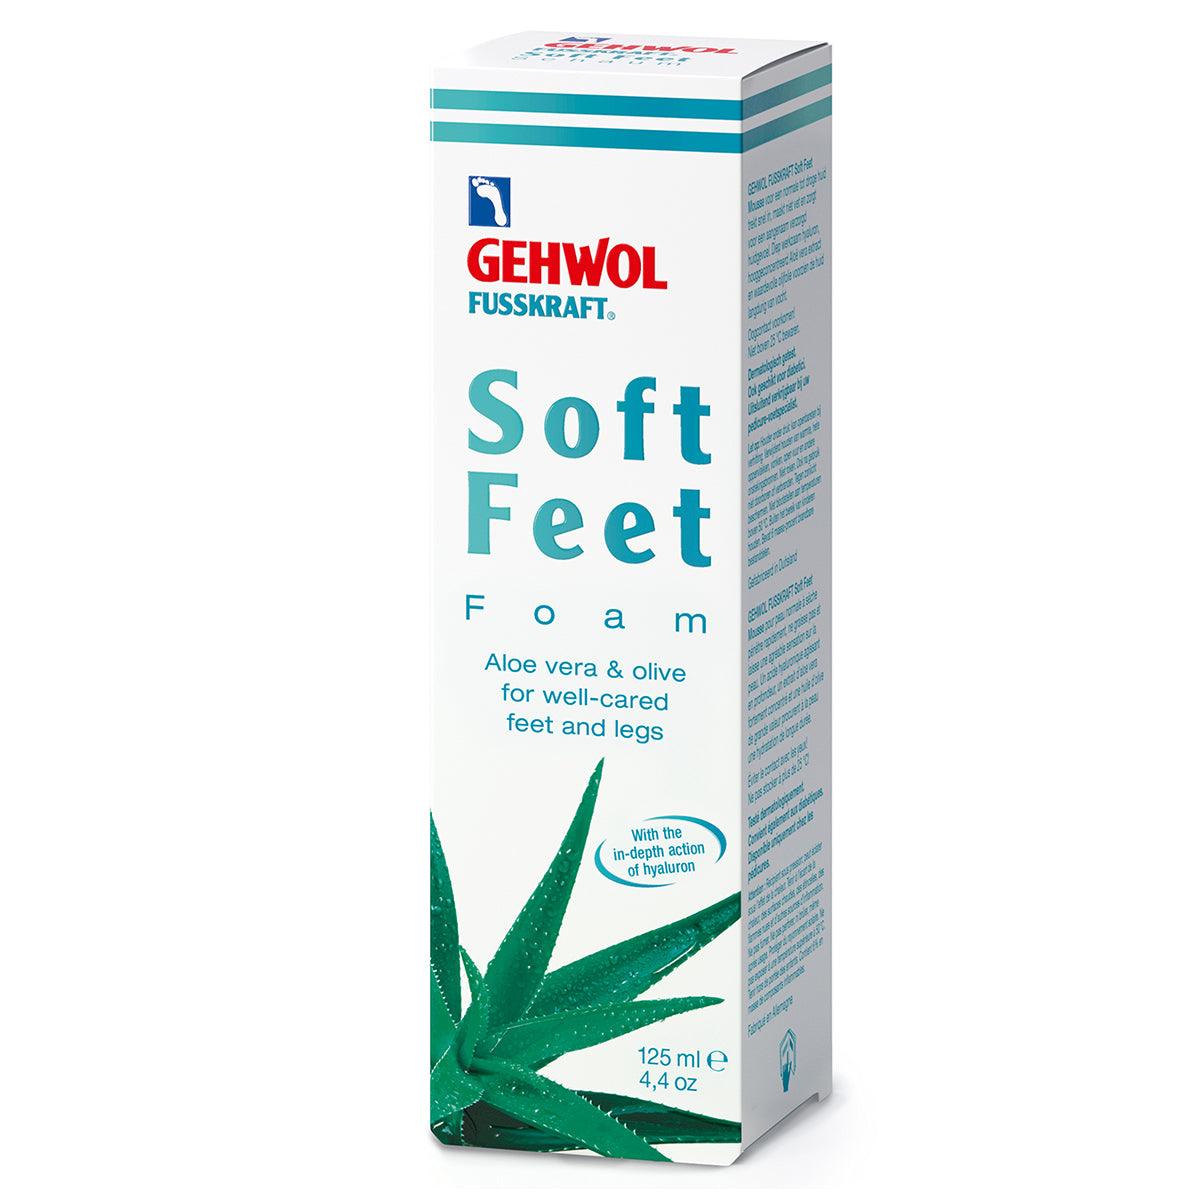 Gehwol Fusskraft Soft Feet Foam | Fotpleie | Gehwol | JK SHOP | JK Barber og herre frisør | Lavepriser | Best